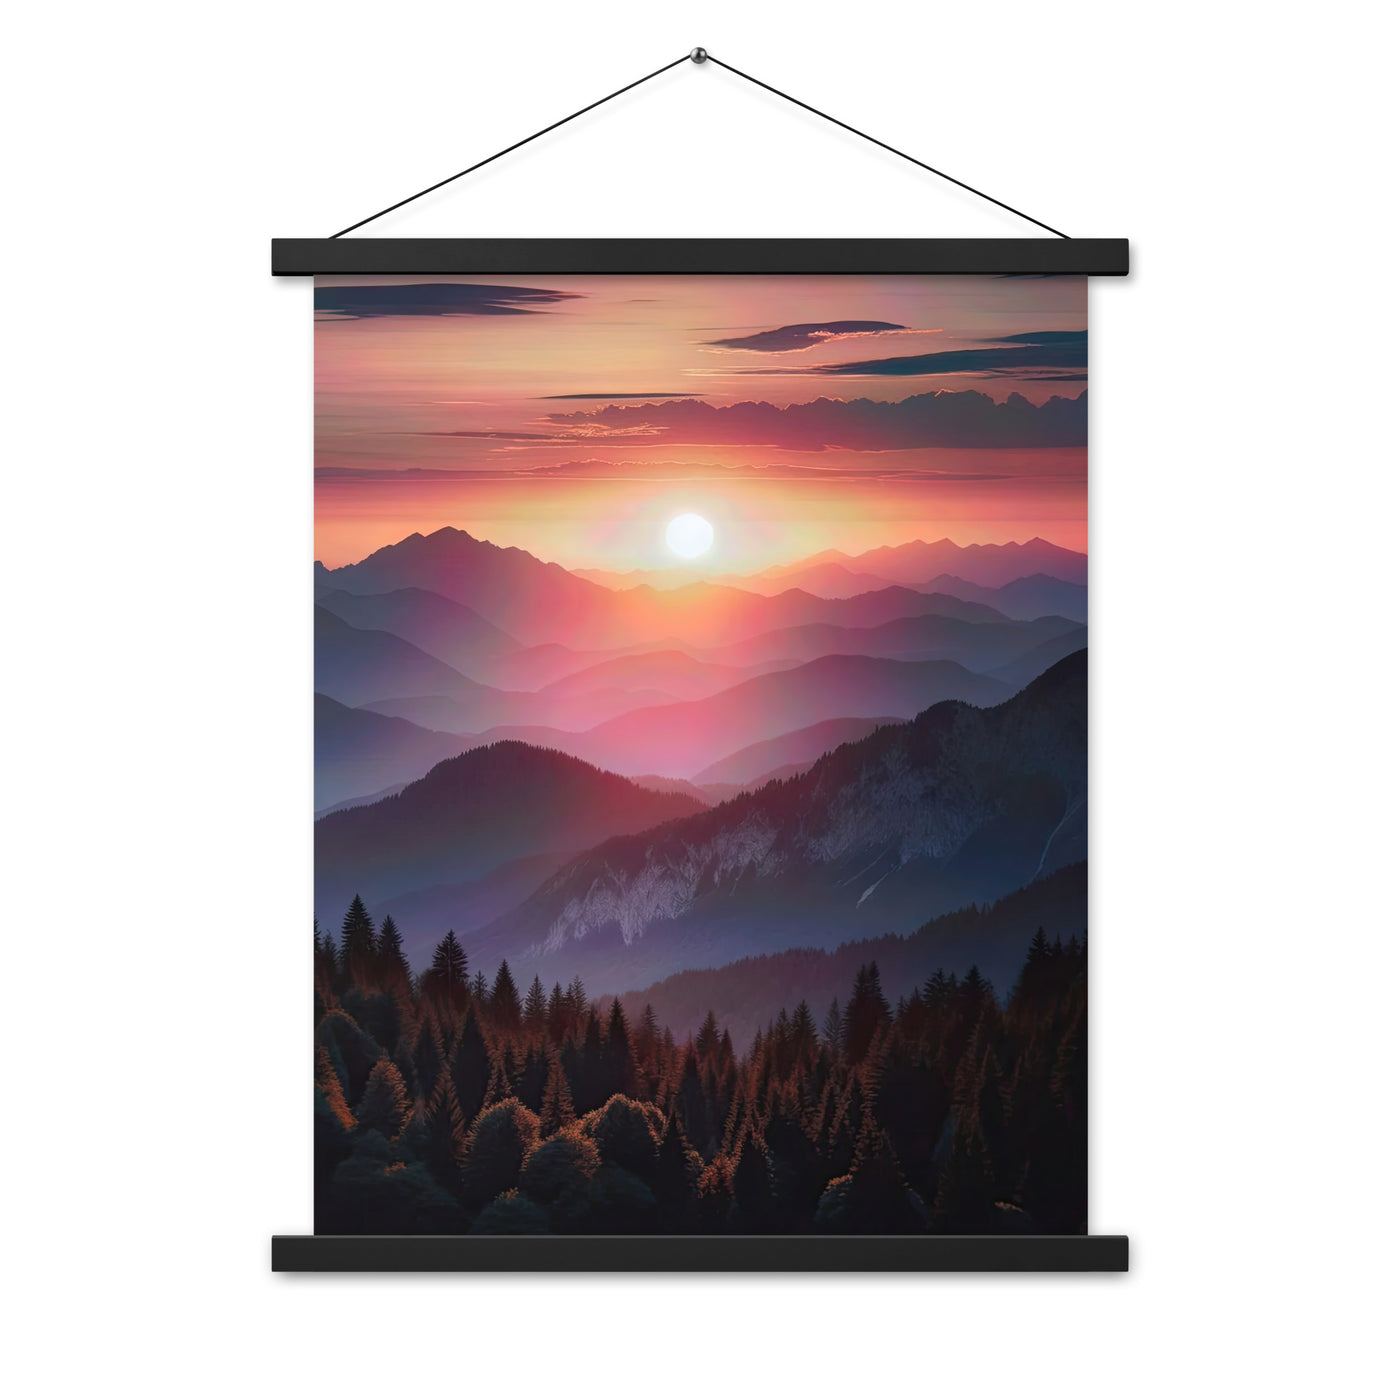 Foto der Alpenwildnis beim Sonnenuntergang, Himmel in warmen Orange-Tönen - Premium Poster mit Aufhängung berge xxx yyy zzz 45.7 x 61 cm